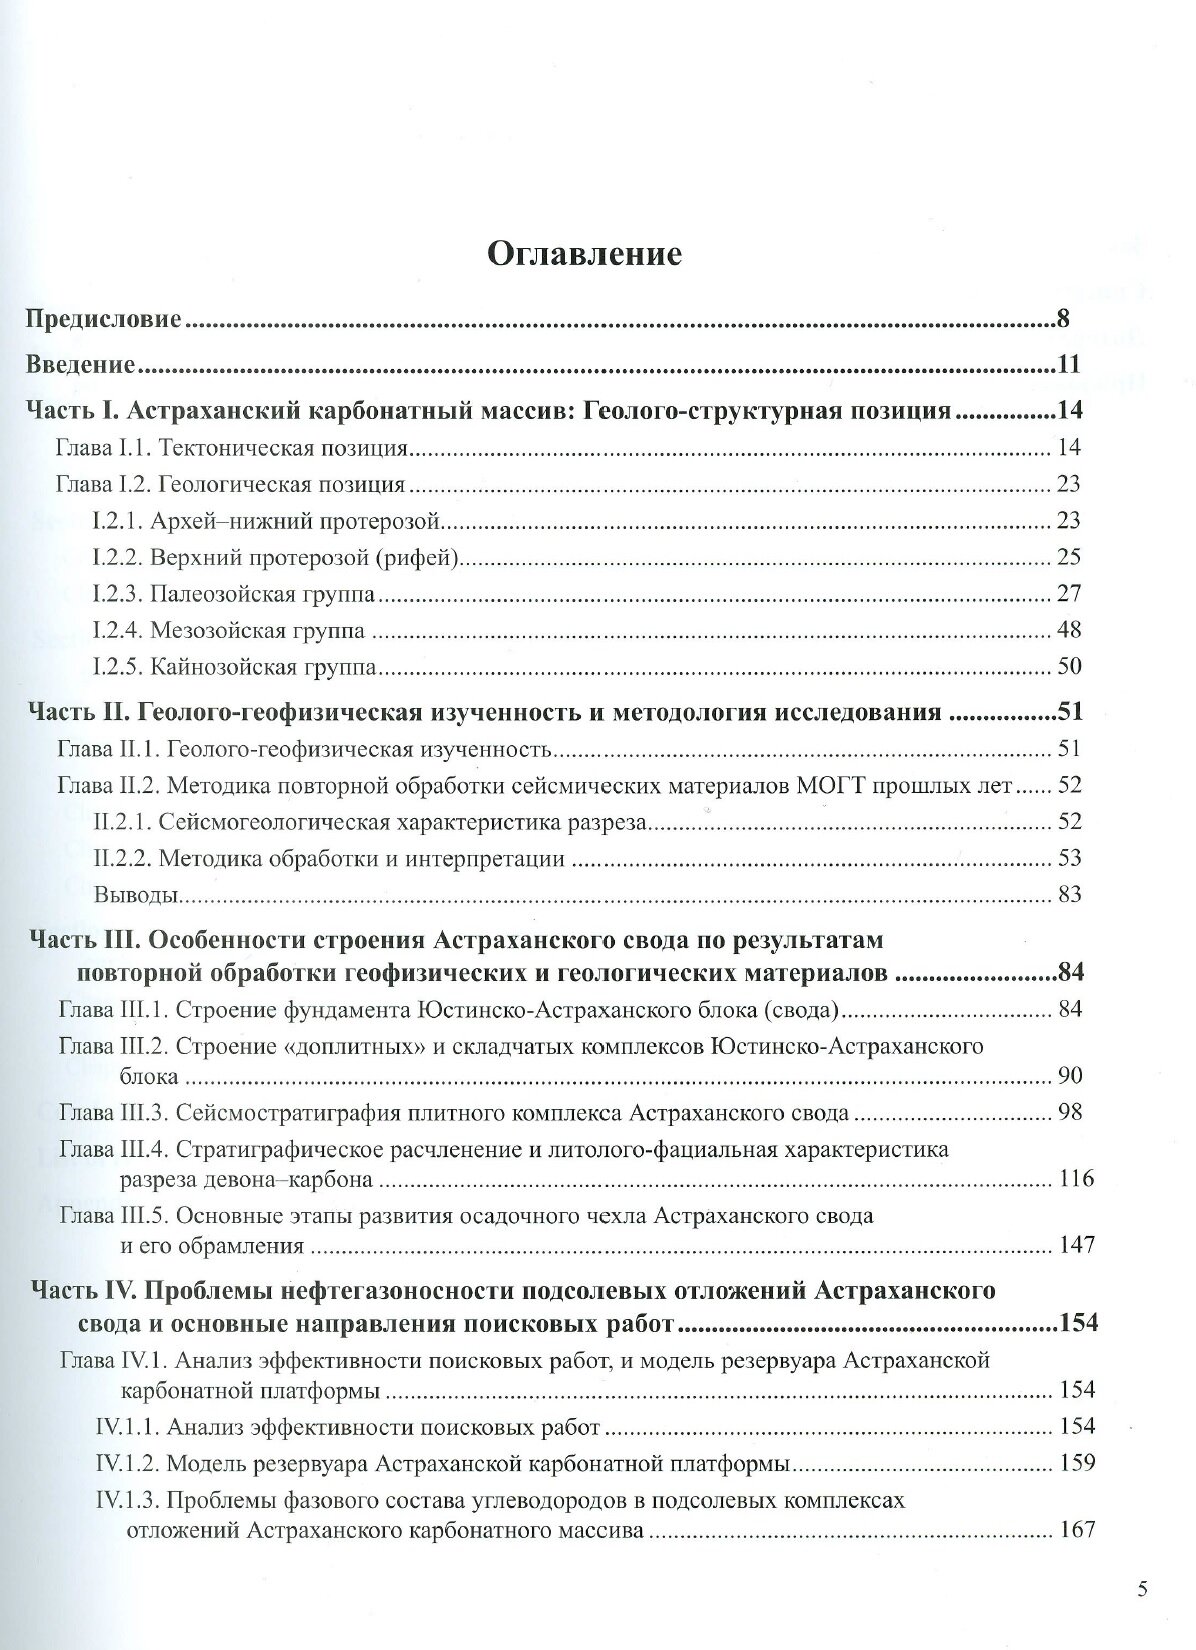 Астраханский карбонатный массив Строение и нефтегазоносность - фото №2